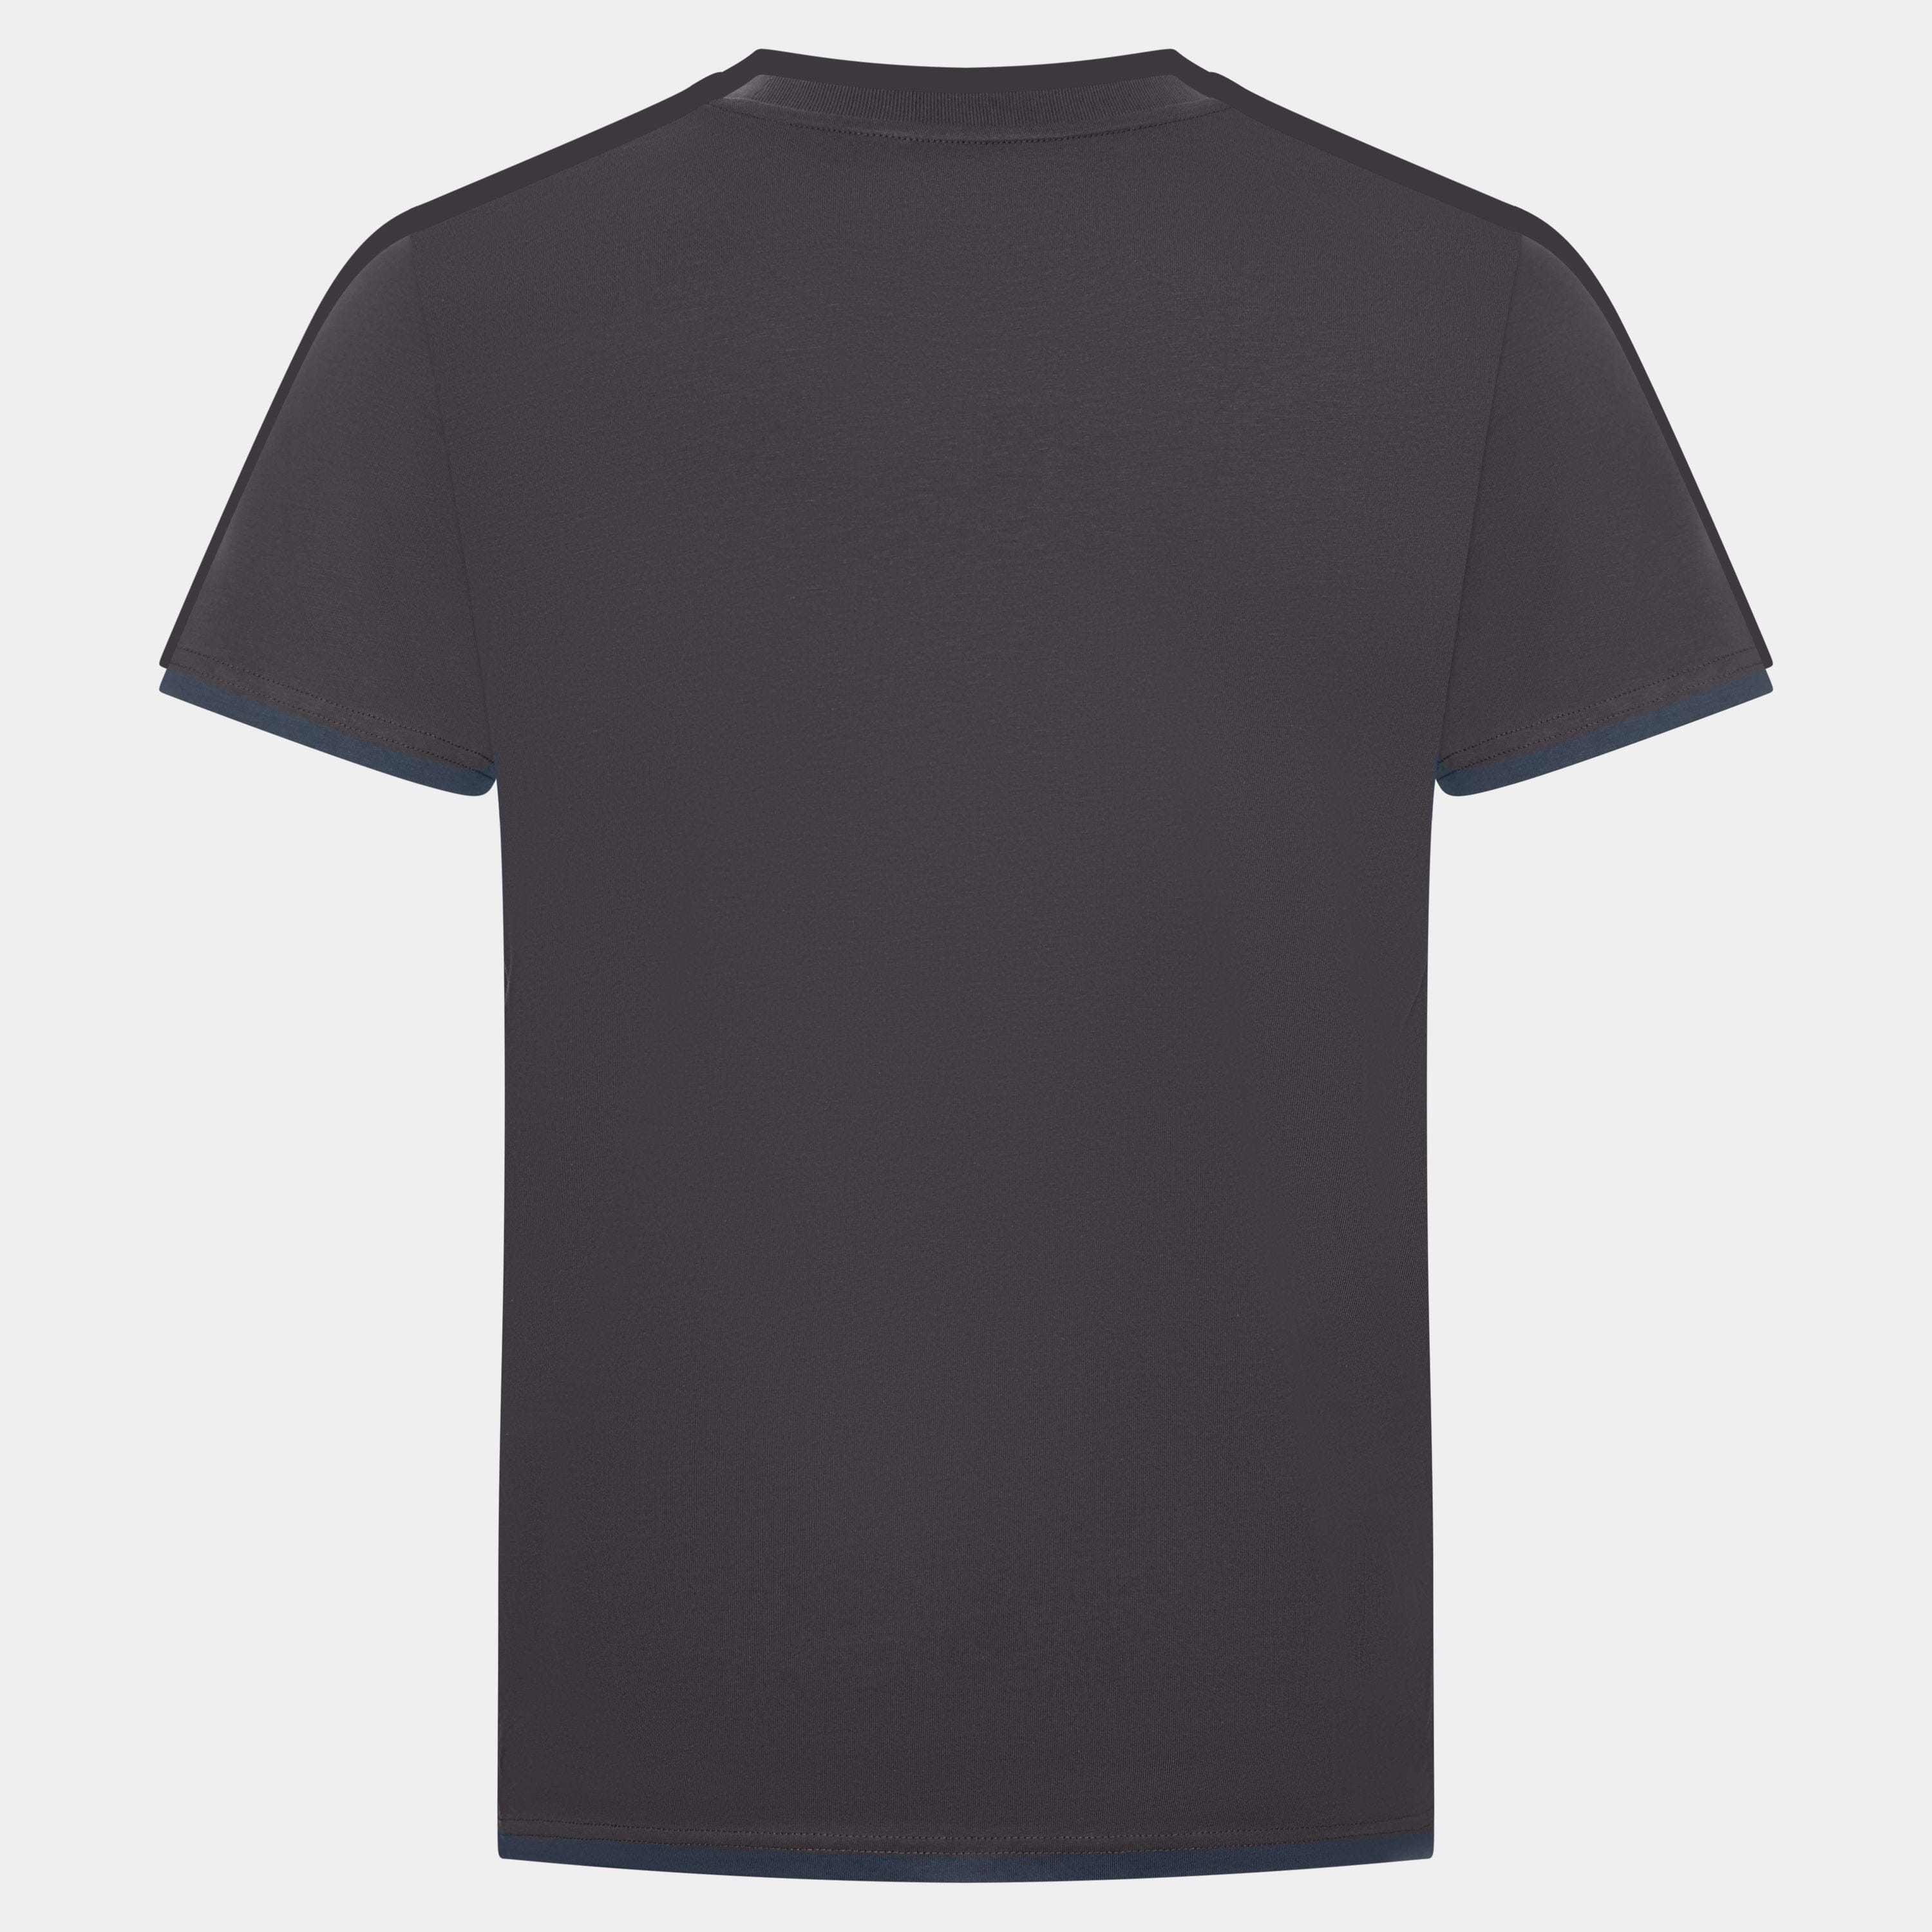 Wildfire Griller - Premium Organic Shirt Unisex-Shirts Wildspark 